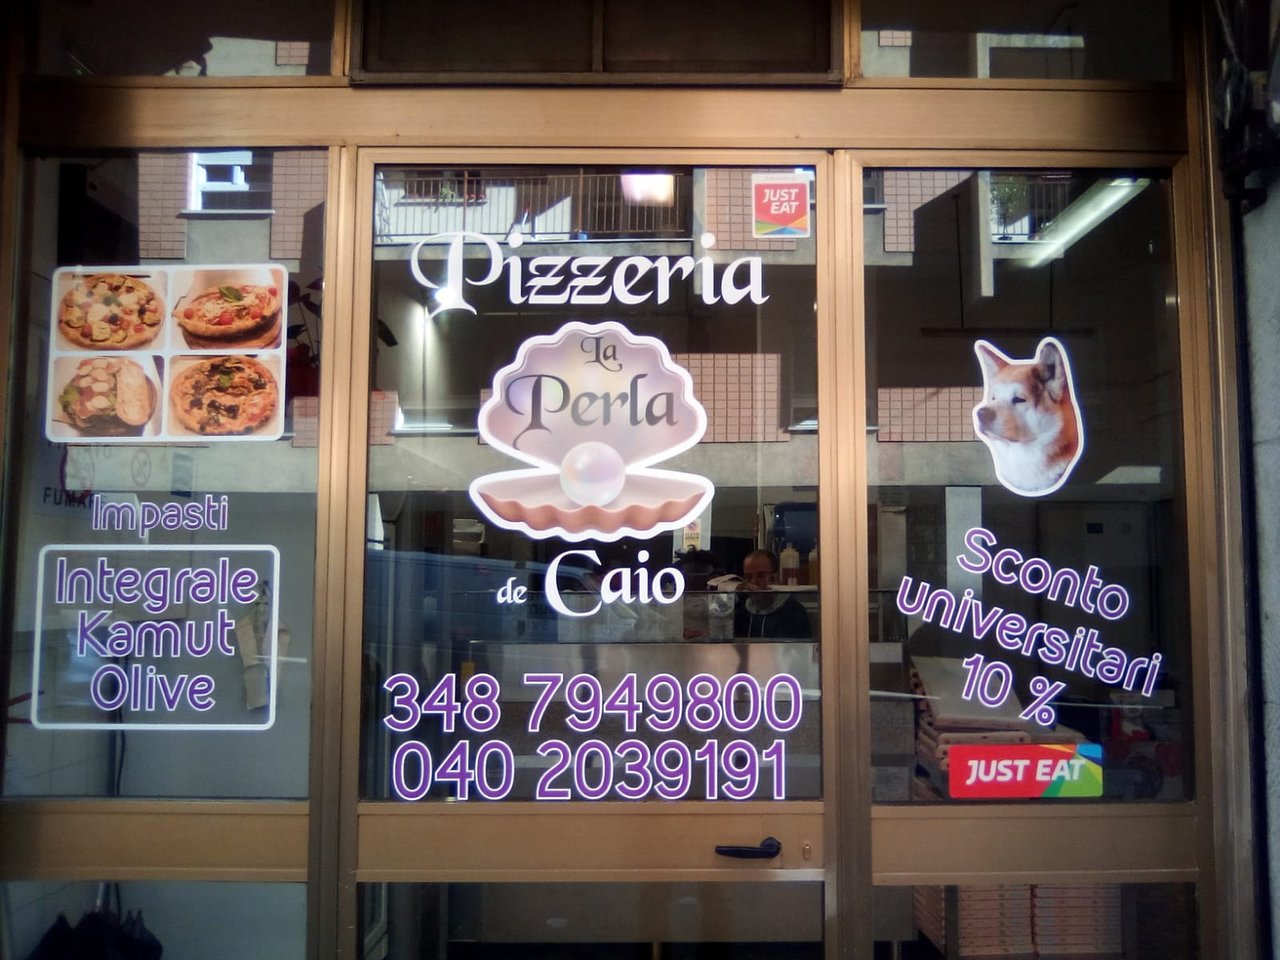 Pizzeria La Perla De Caio, Trieste